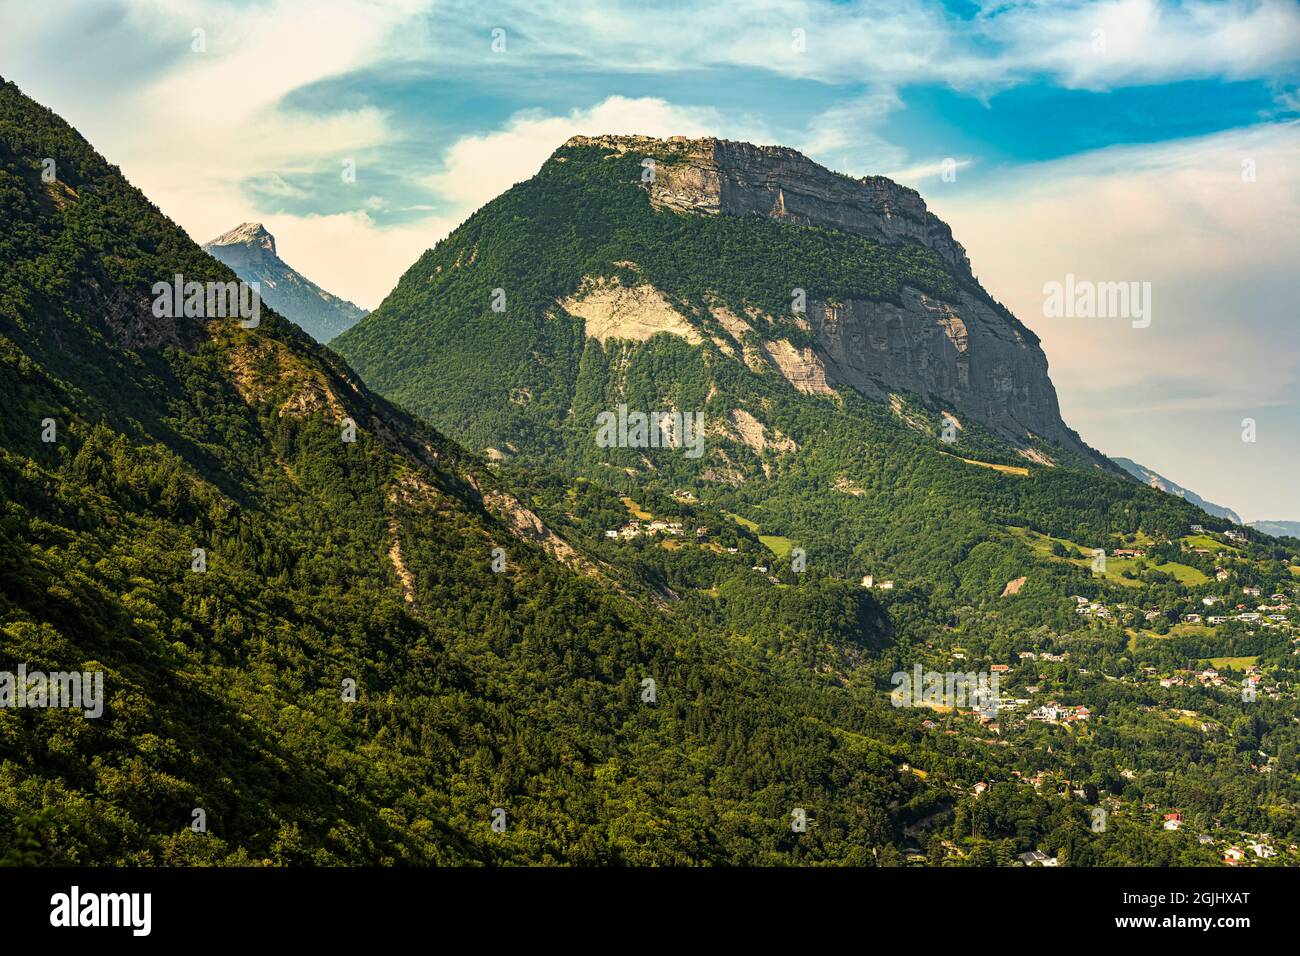 Die Gipfelkämme des Mont Saint-Eynard. Der Gipfel ist Teil des Chartreuse-Gebirges in den Alpen. Grenoble, Region Auvergne-Rhône-Alps, Frankreich Stockfoto